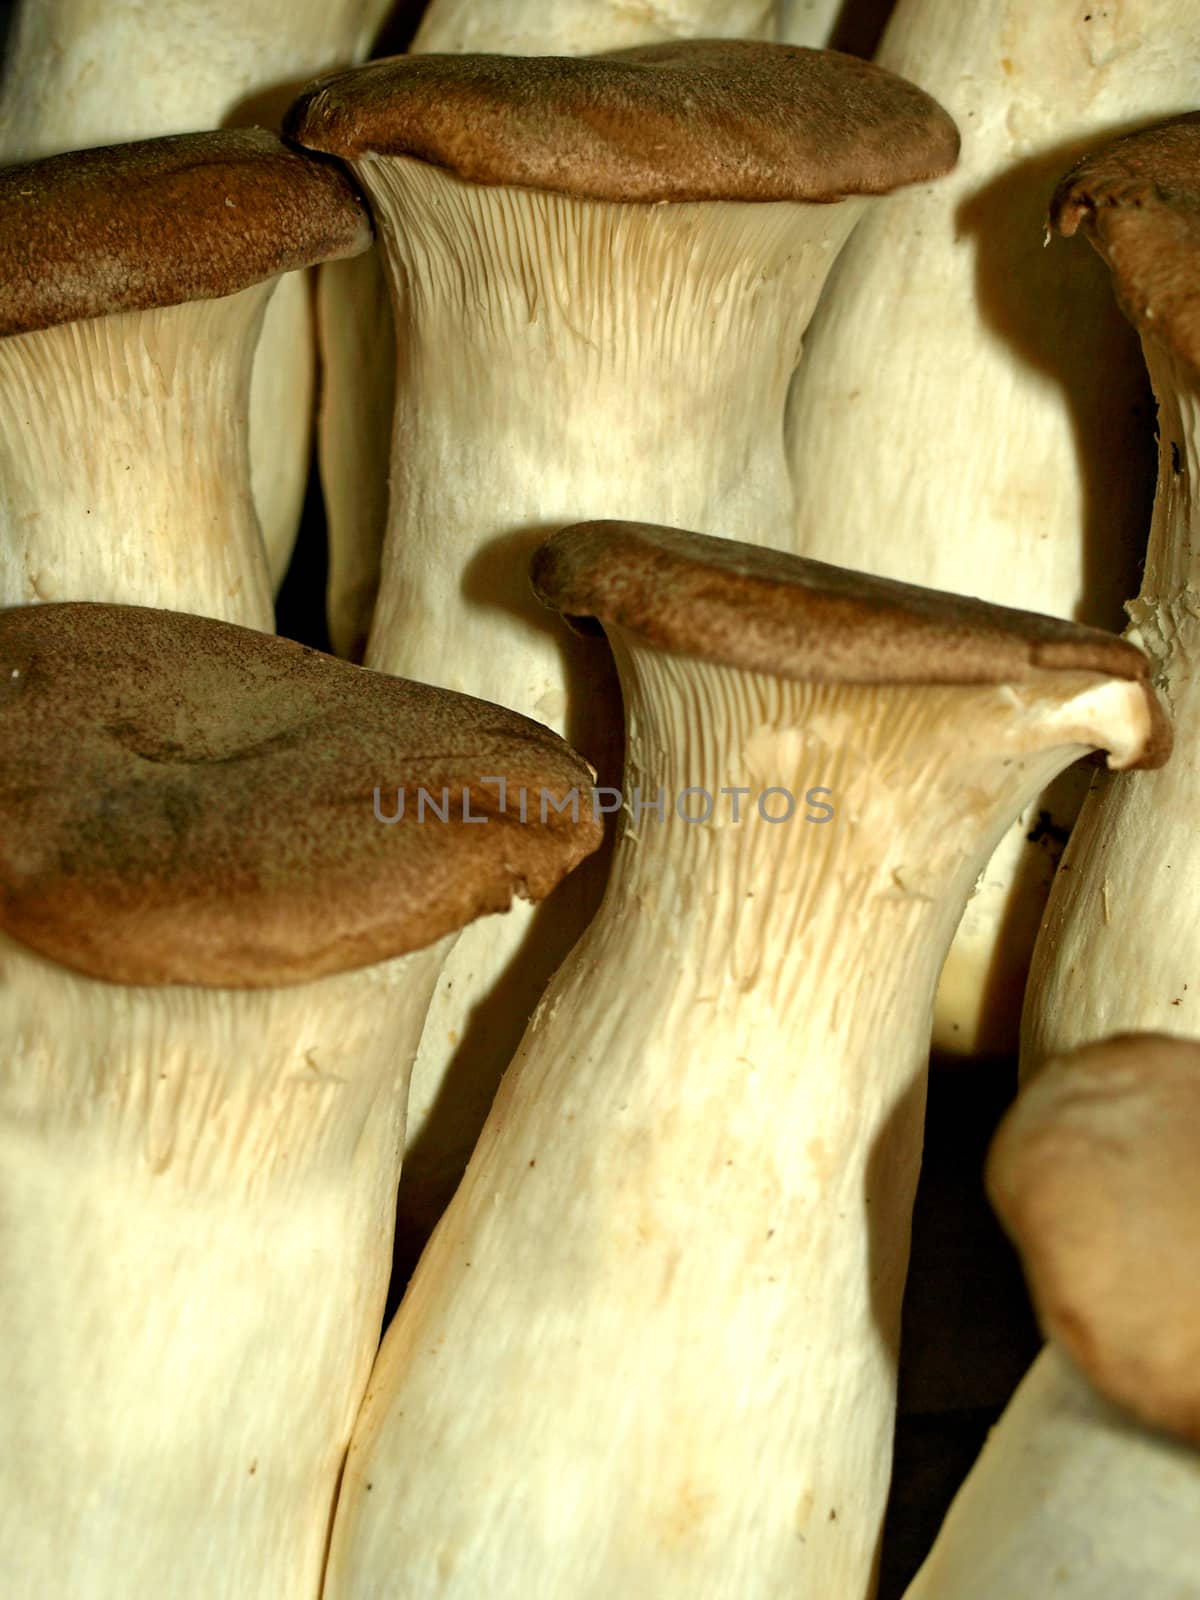 King oyster mushroom by Jochen